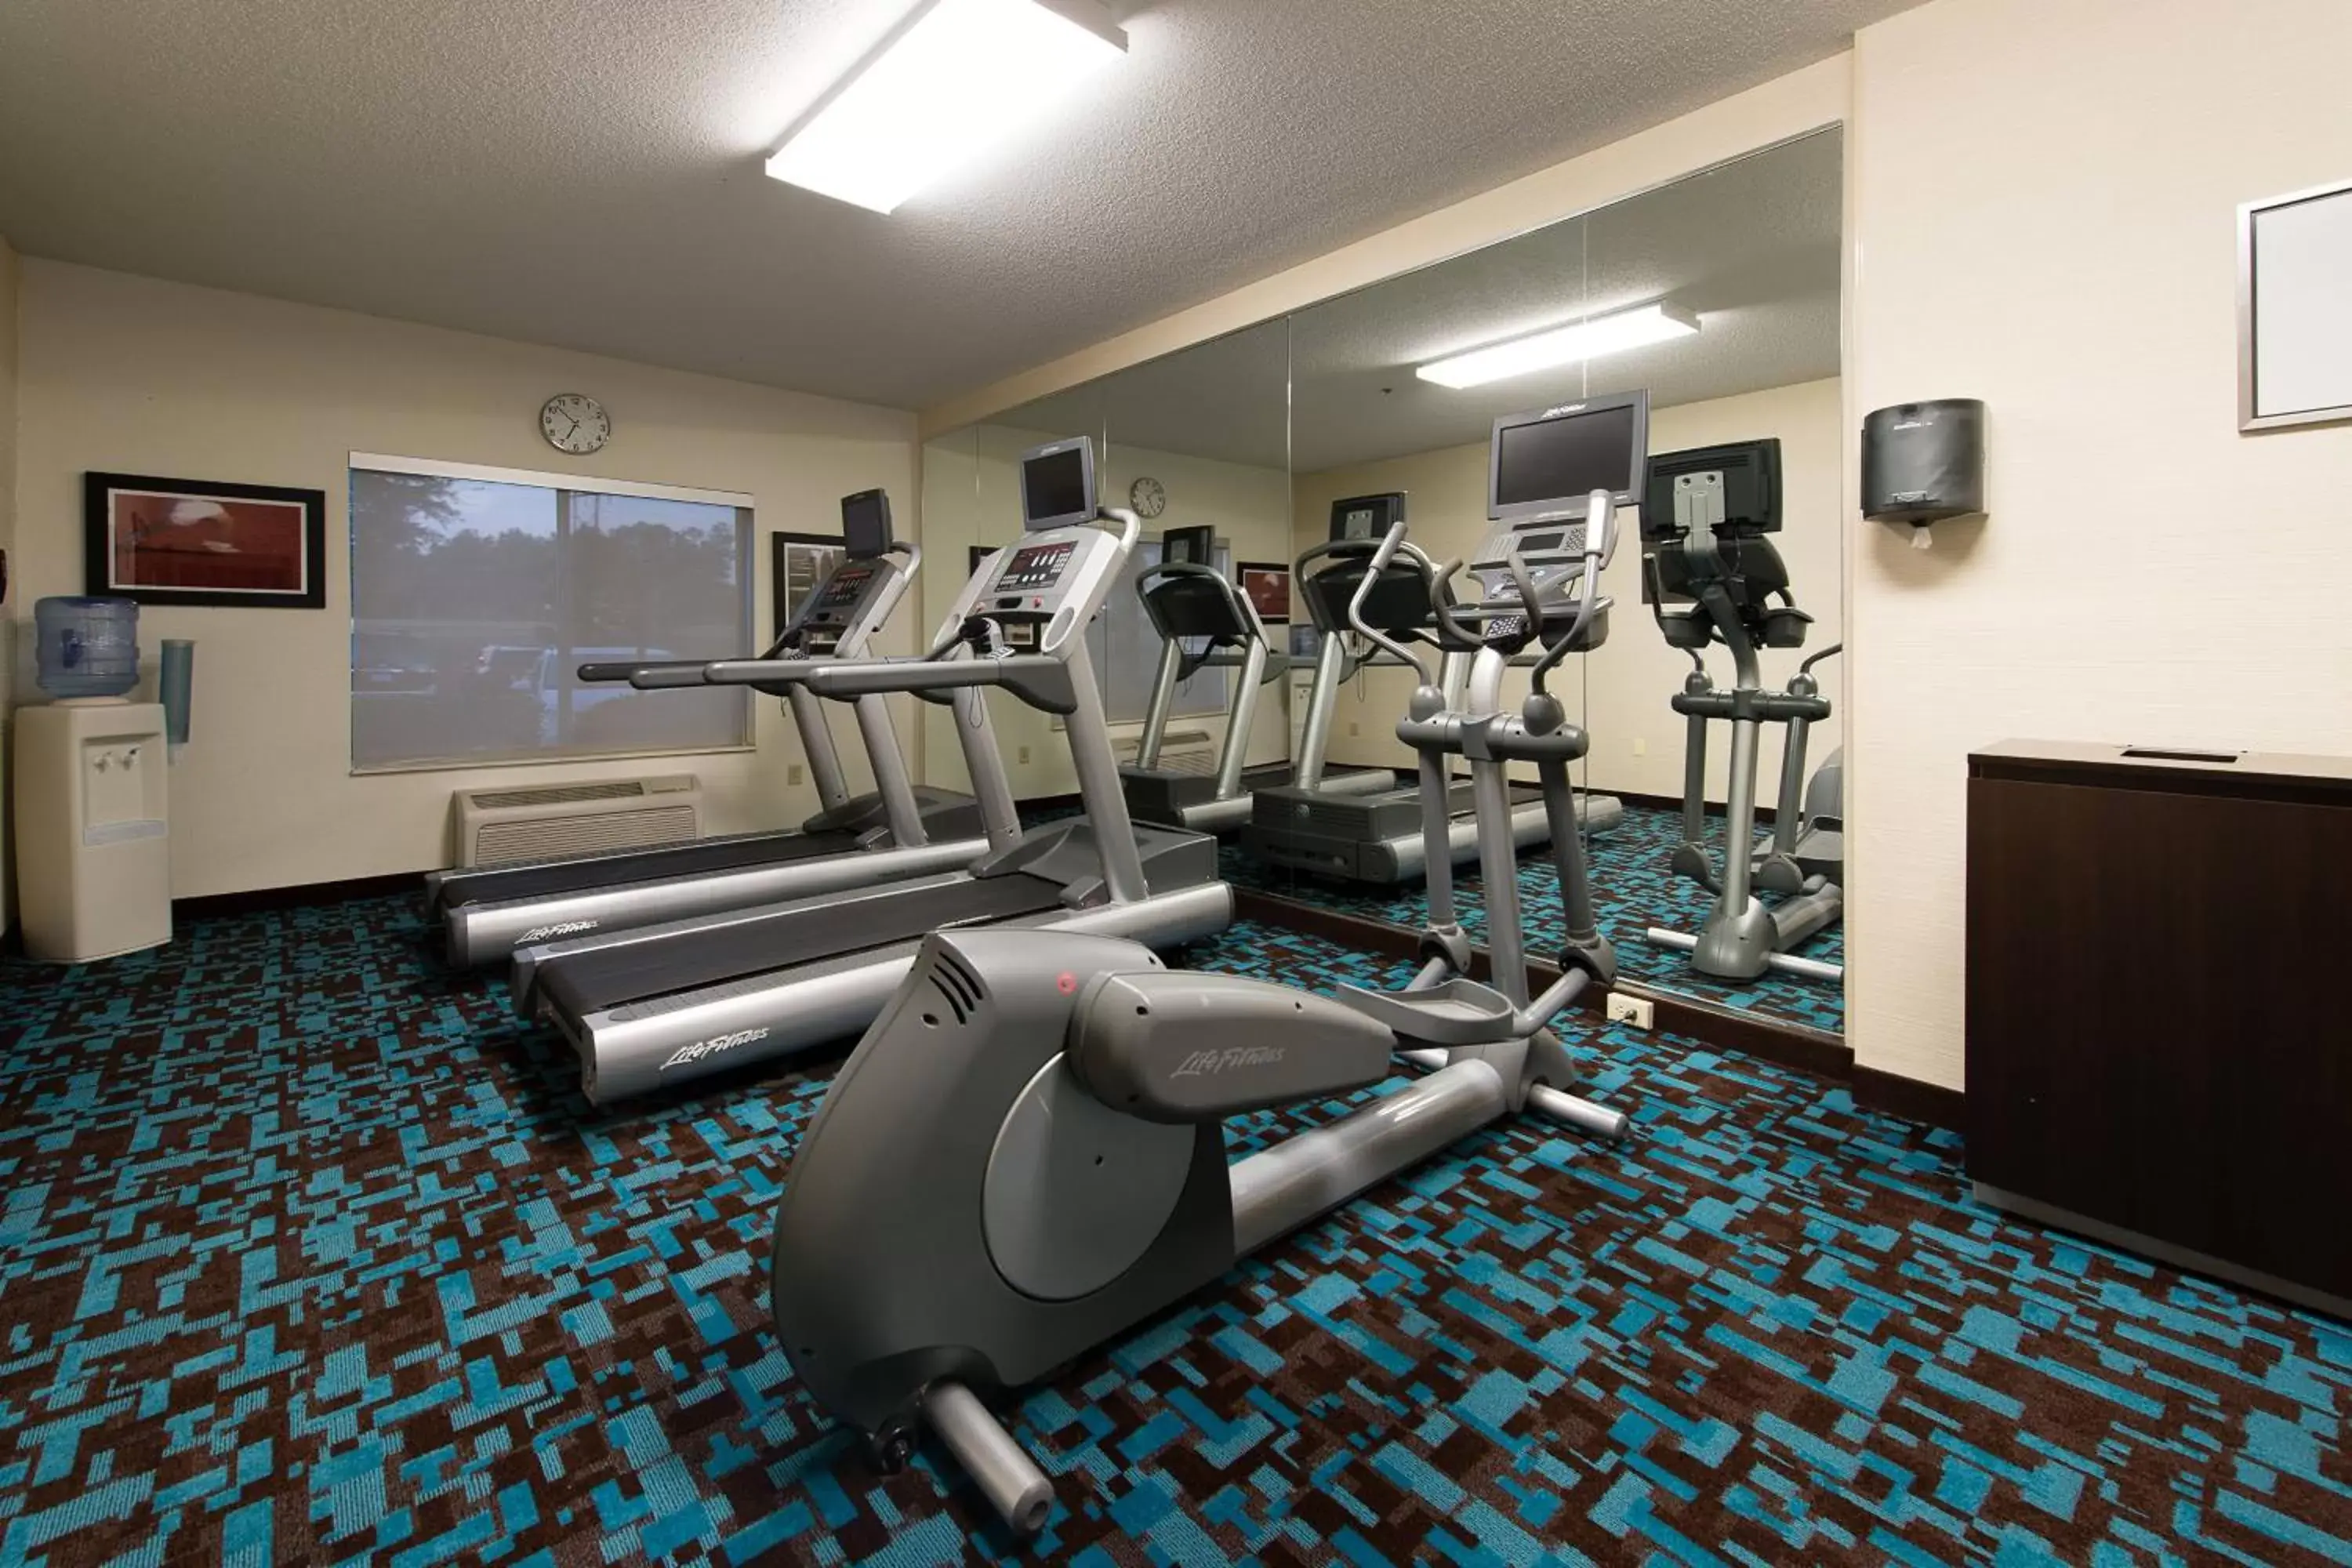 Fitness centre/facilities, Fitness Center/Facilities in Fairfield Inn Orangeburg